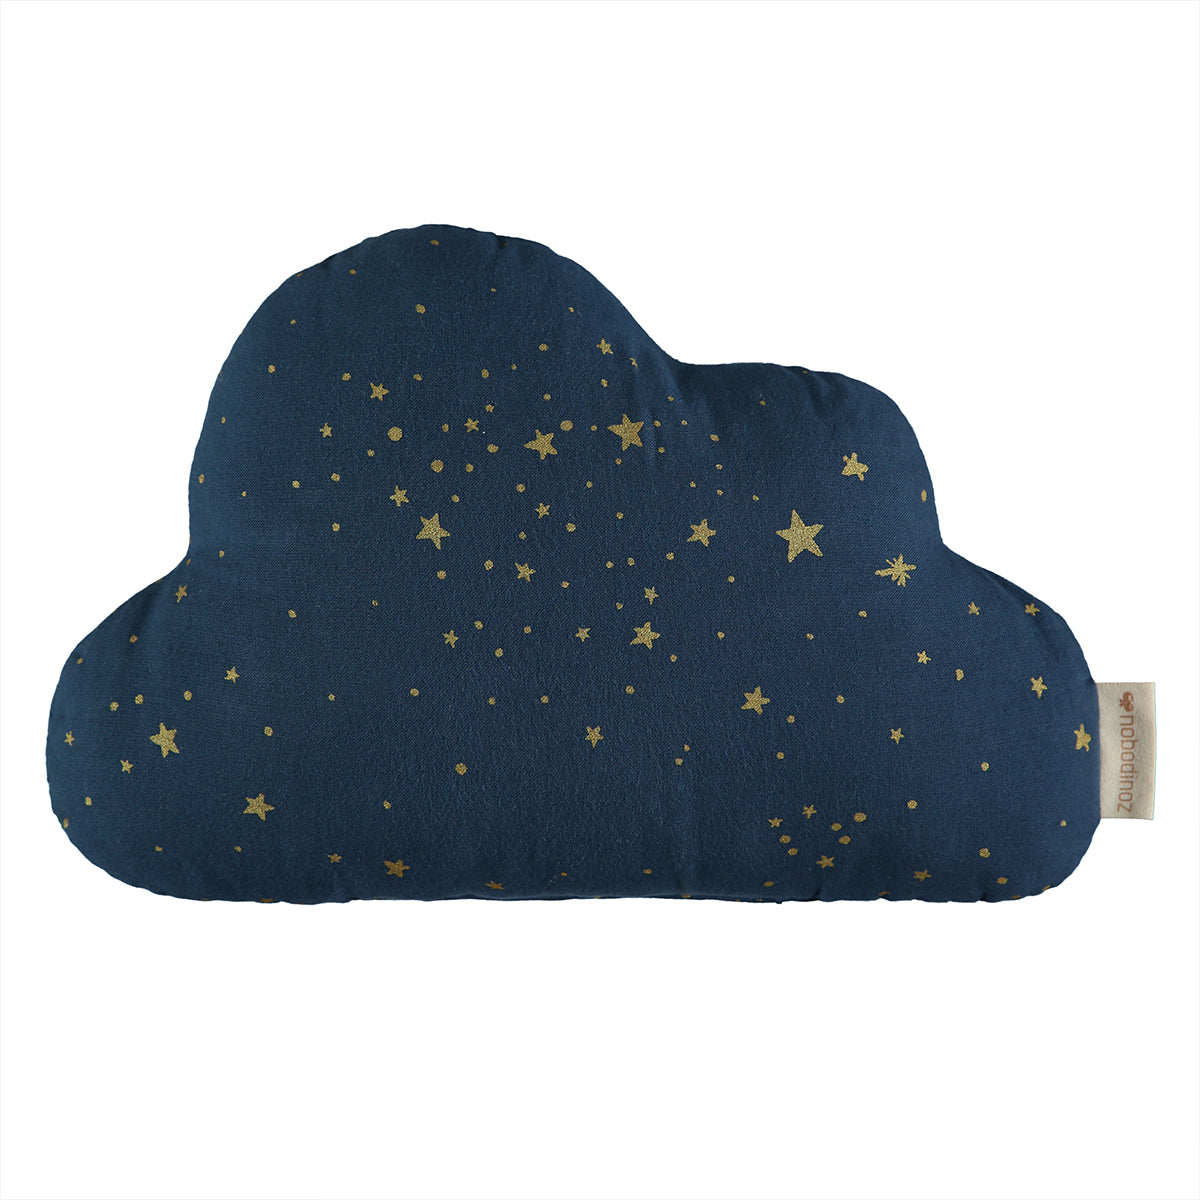 Dit schattige wolk kussen van Nobodinoz in de kleur gold stella night blue maakt elke kinderkamer wat dromeriger. Het sierkussen is heerlijk zacht eis gemaakt van biologisch katoen. VanZus